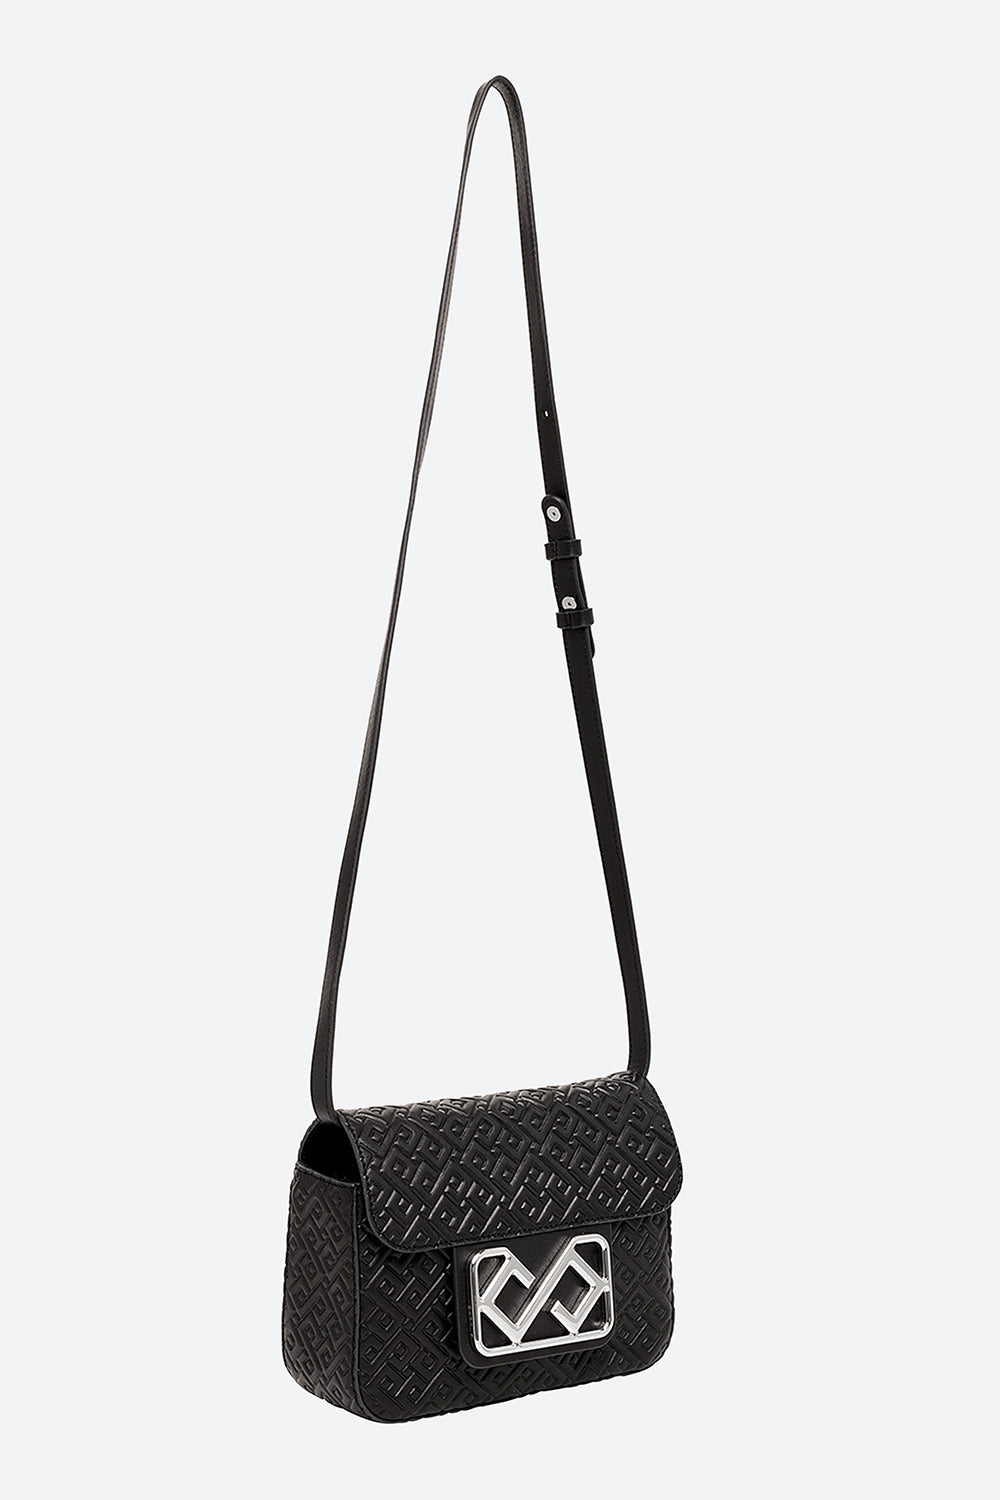 Soledad Leather Belt Bag in Black, with Polished Chrome Hardware